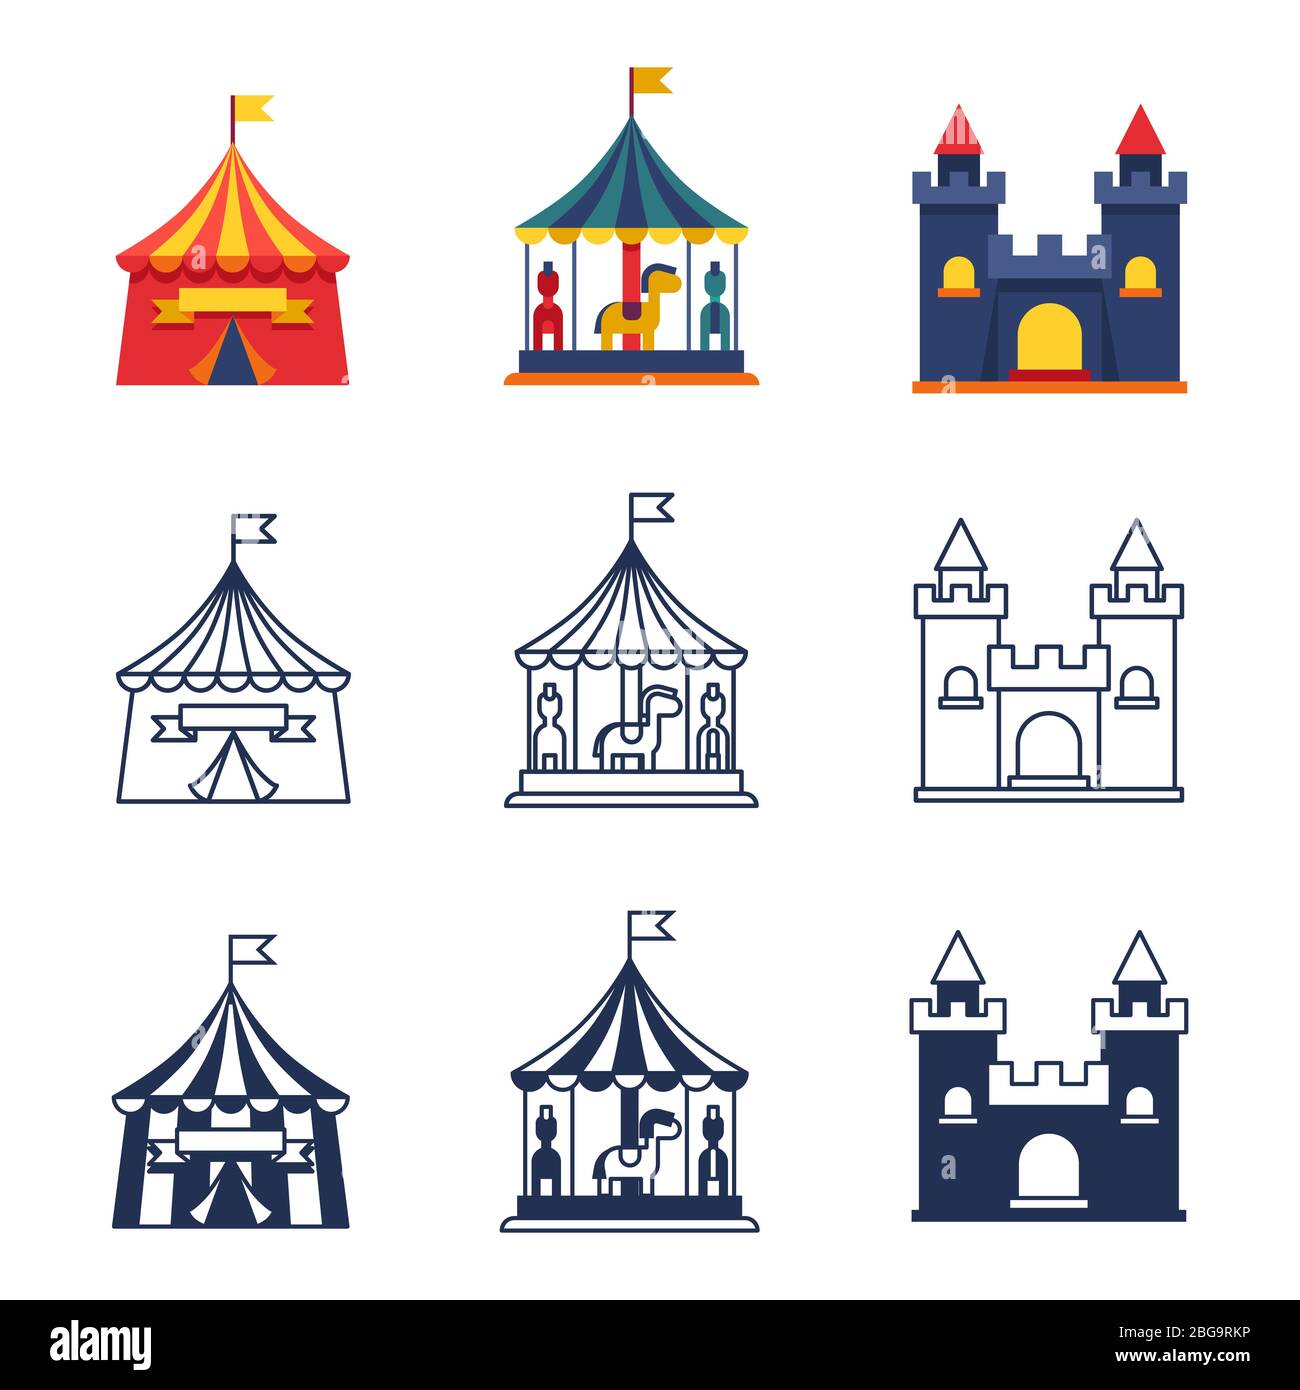 Parc d'attractions couleur tentes cirque collection d'icônes de carnaval. Illustration vectorielle Illustration de Vecteur